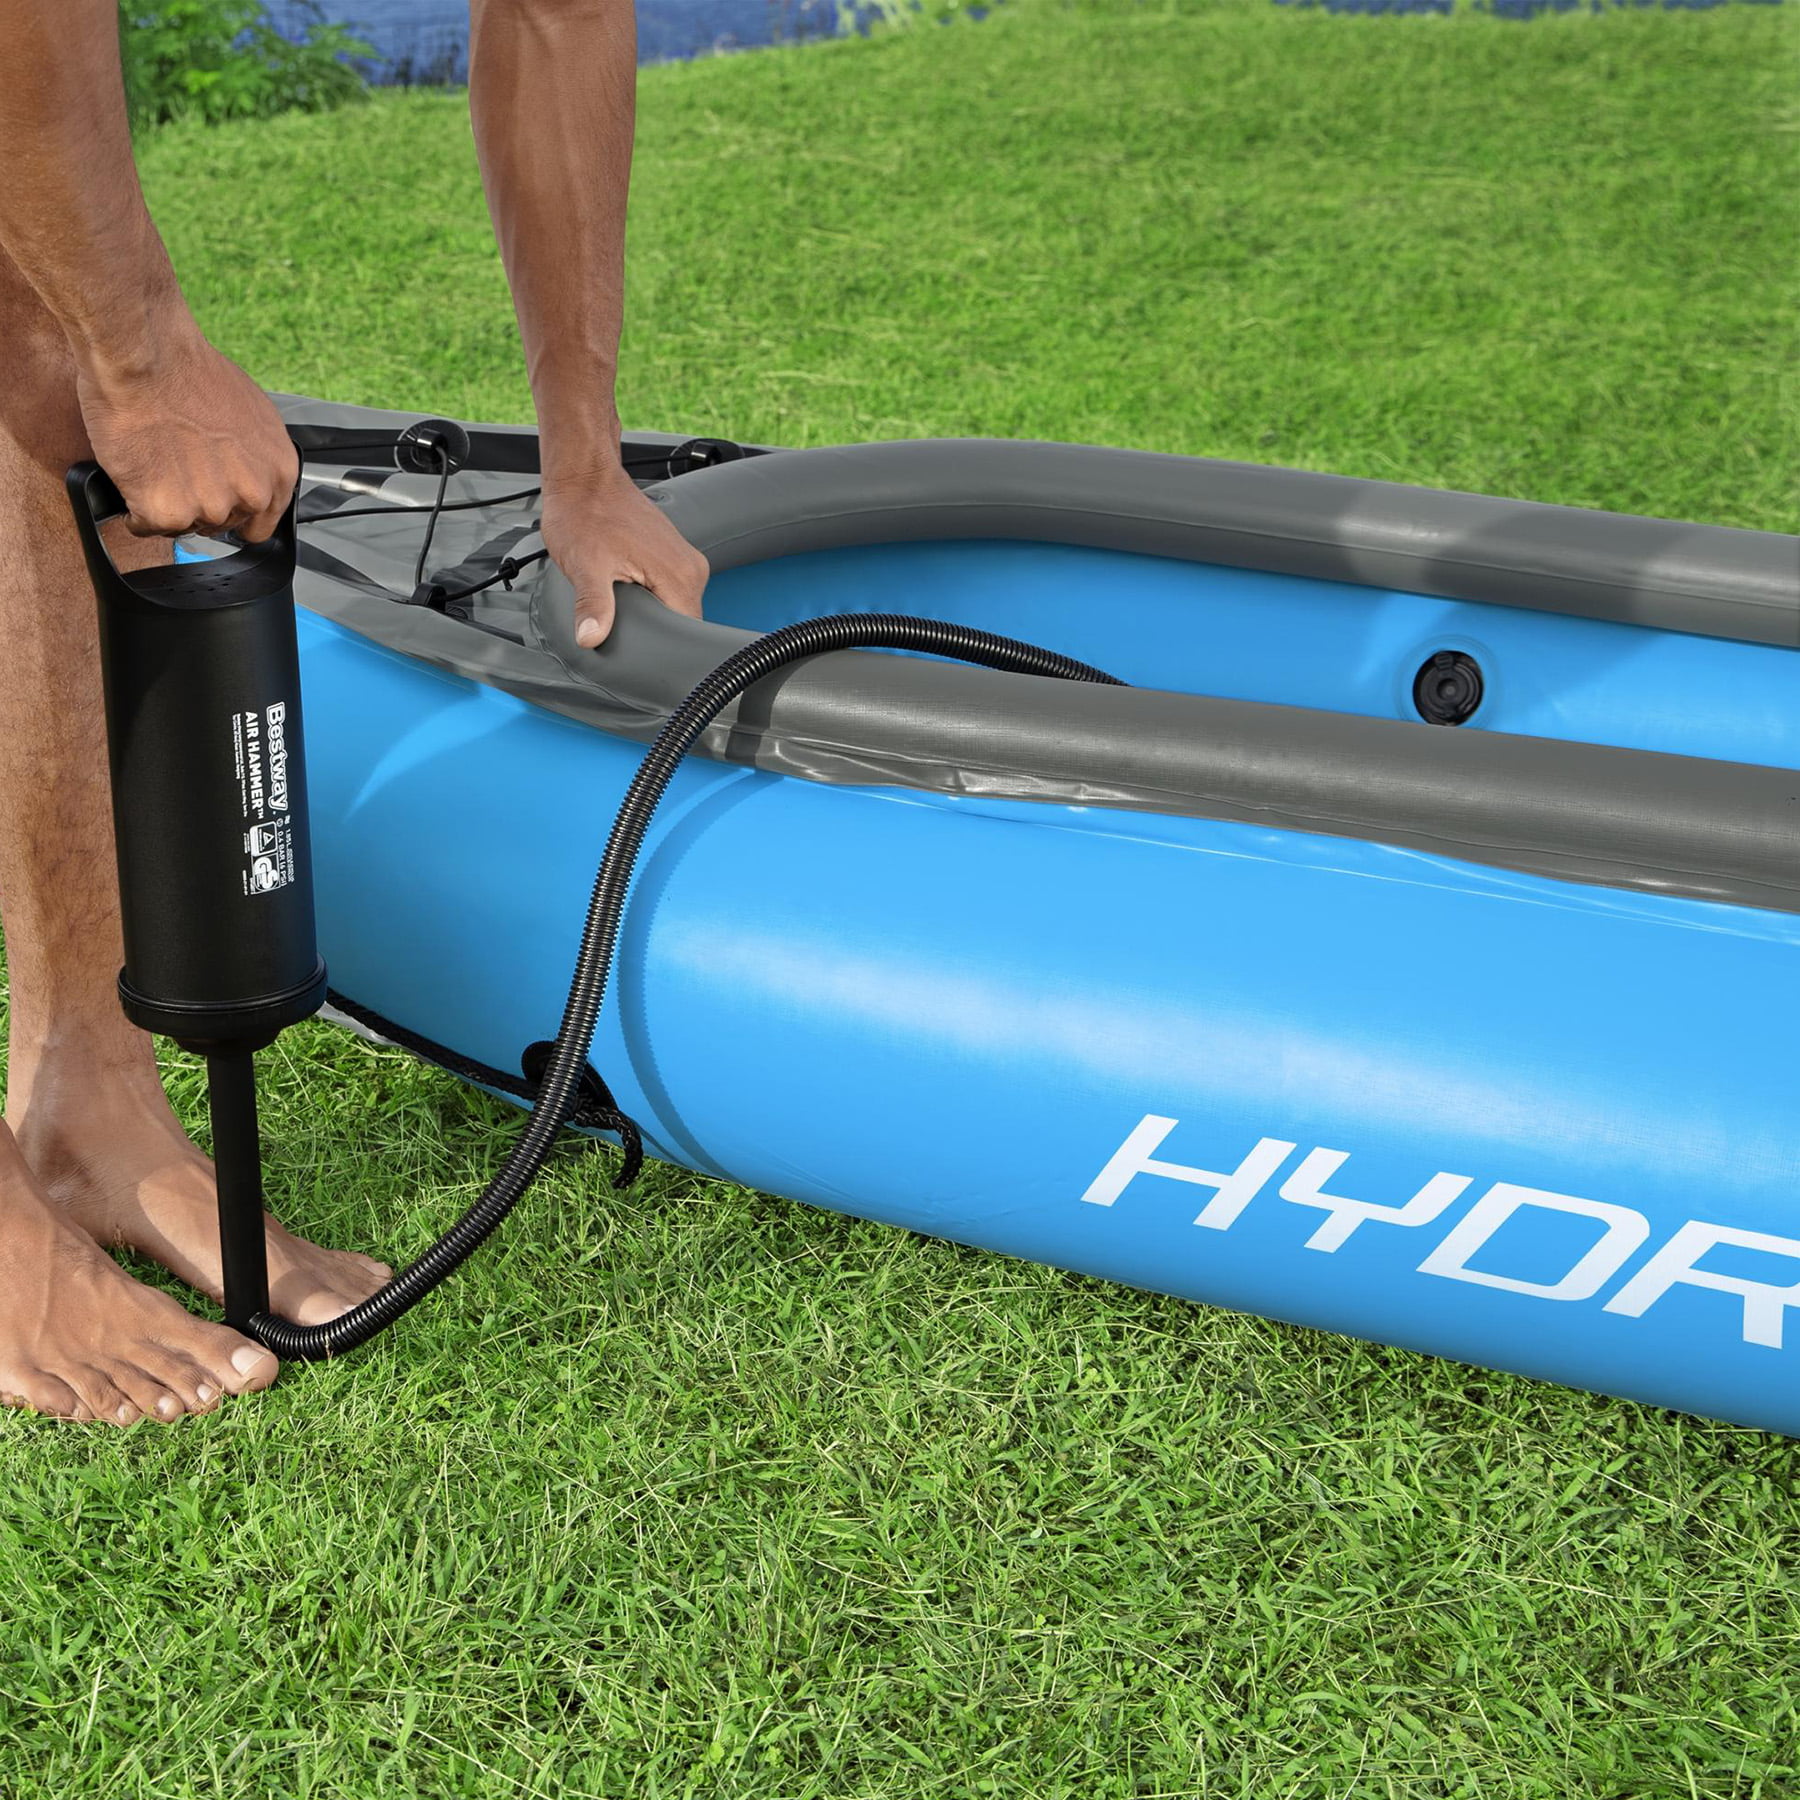 Kayak hinchable Hydro Force Cove Champion X2 -  - Todo para tus  actividades náuticas